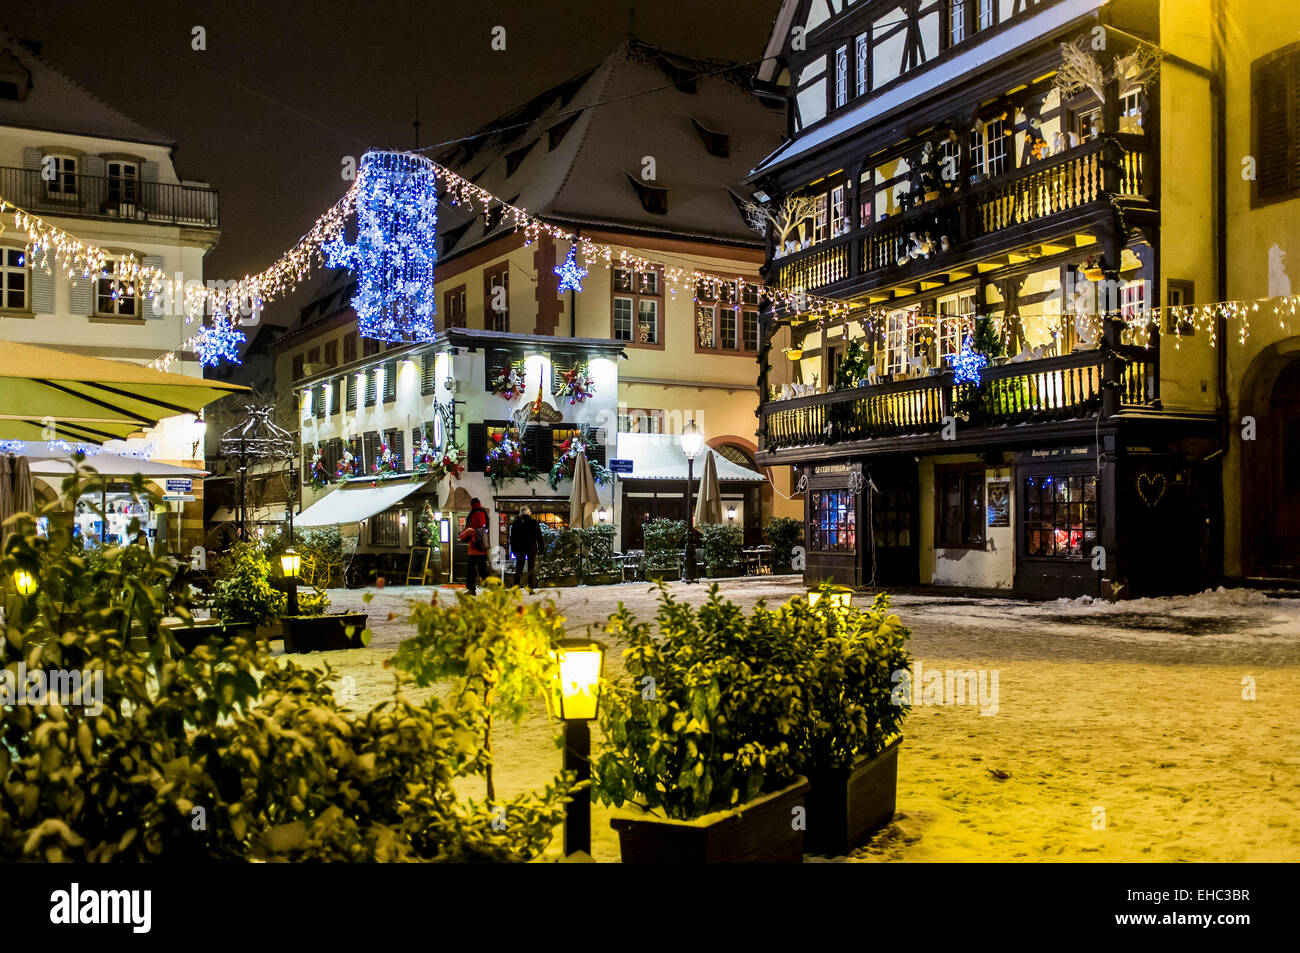 Place du marché aux cochons de Lait enneigée la nuit à Noël, rue vide, personne, personne, personne, Strasbourg Alsace France Europe Banque D'Images